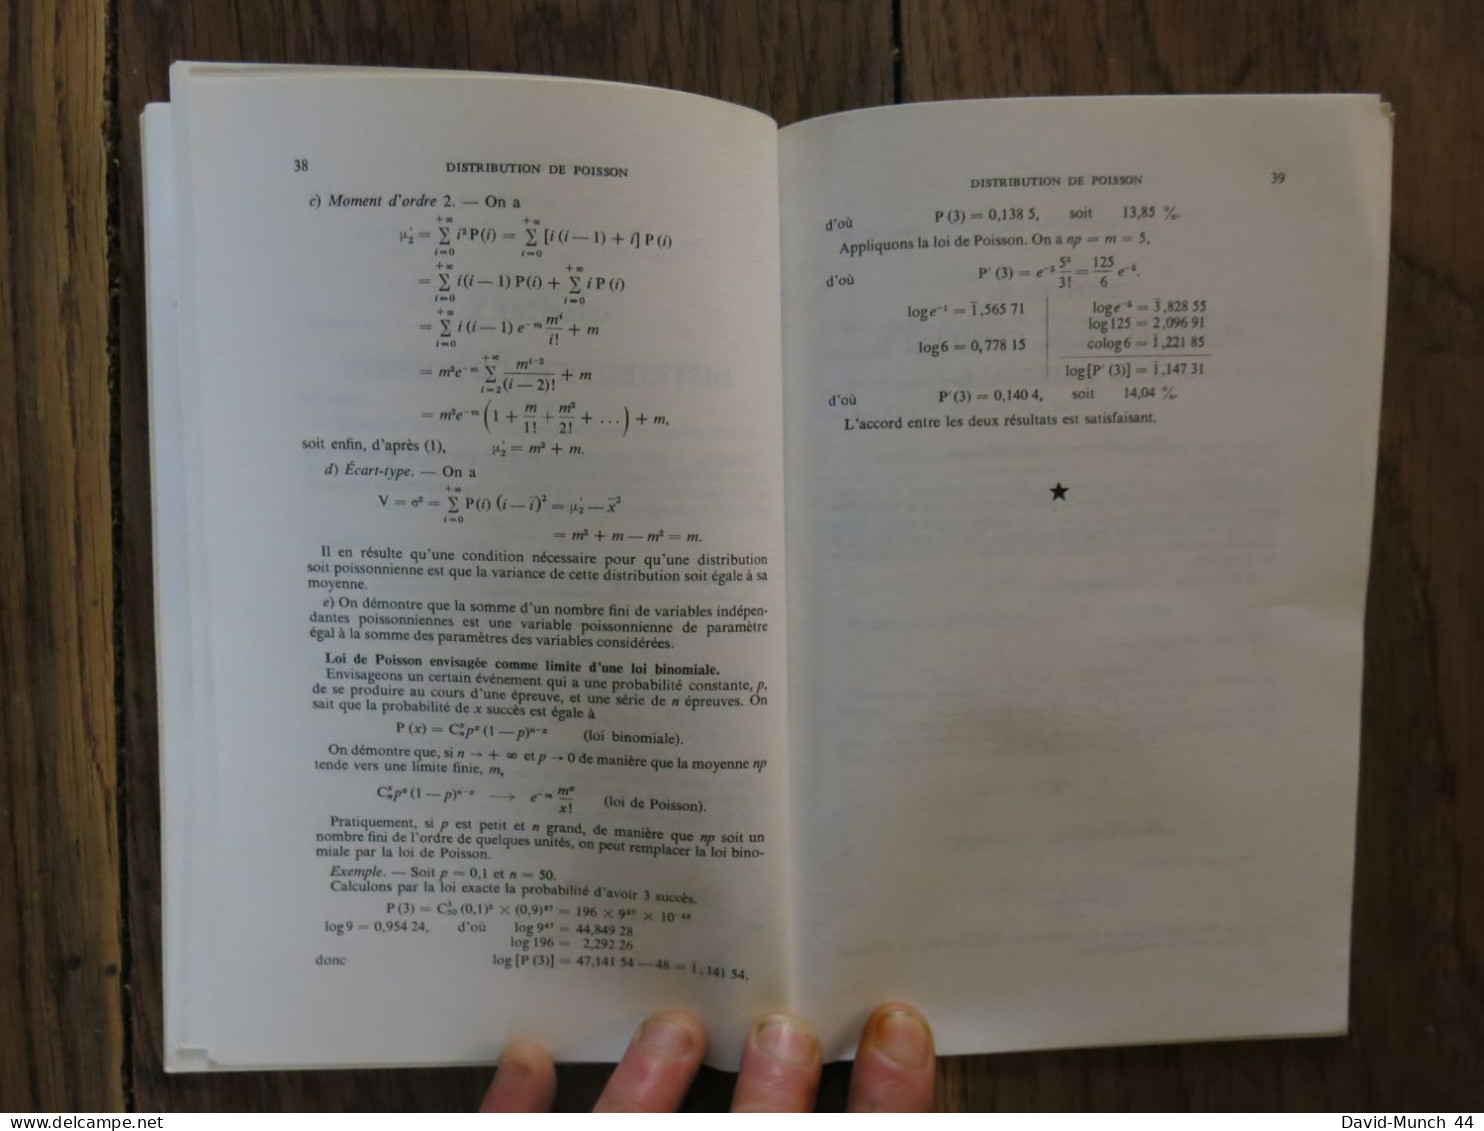 Pour une Révision Rapide du Cours de Probabilités et de Statistique de A. Combes et M. Saada. Vuibert. 1968